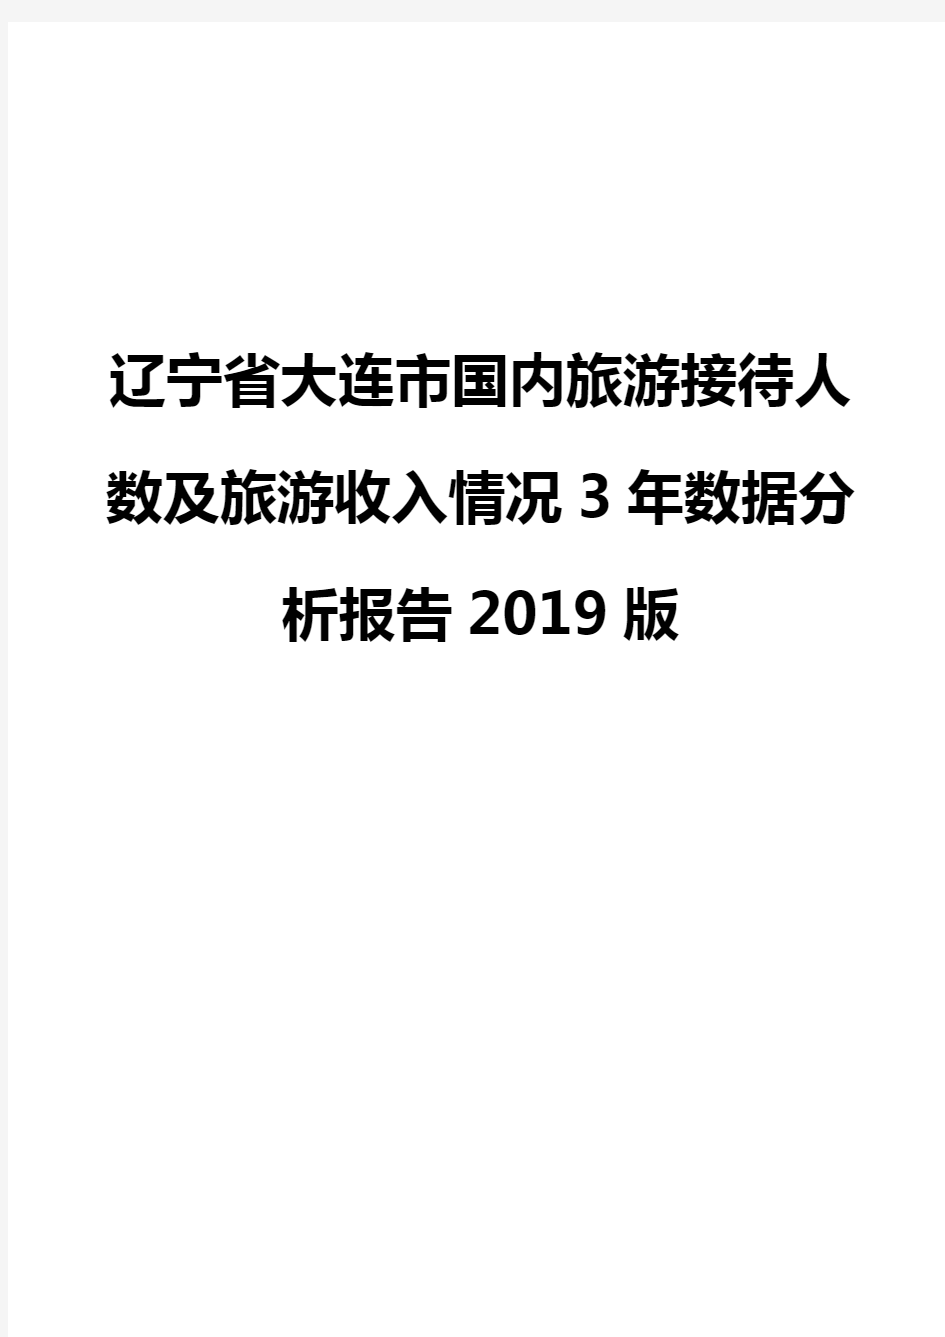 辽宁省大连市国内旅游接待人数及旅游收入情况3年数据分析报告2019版